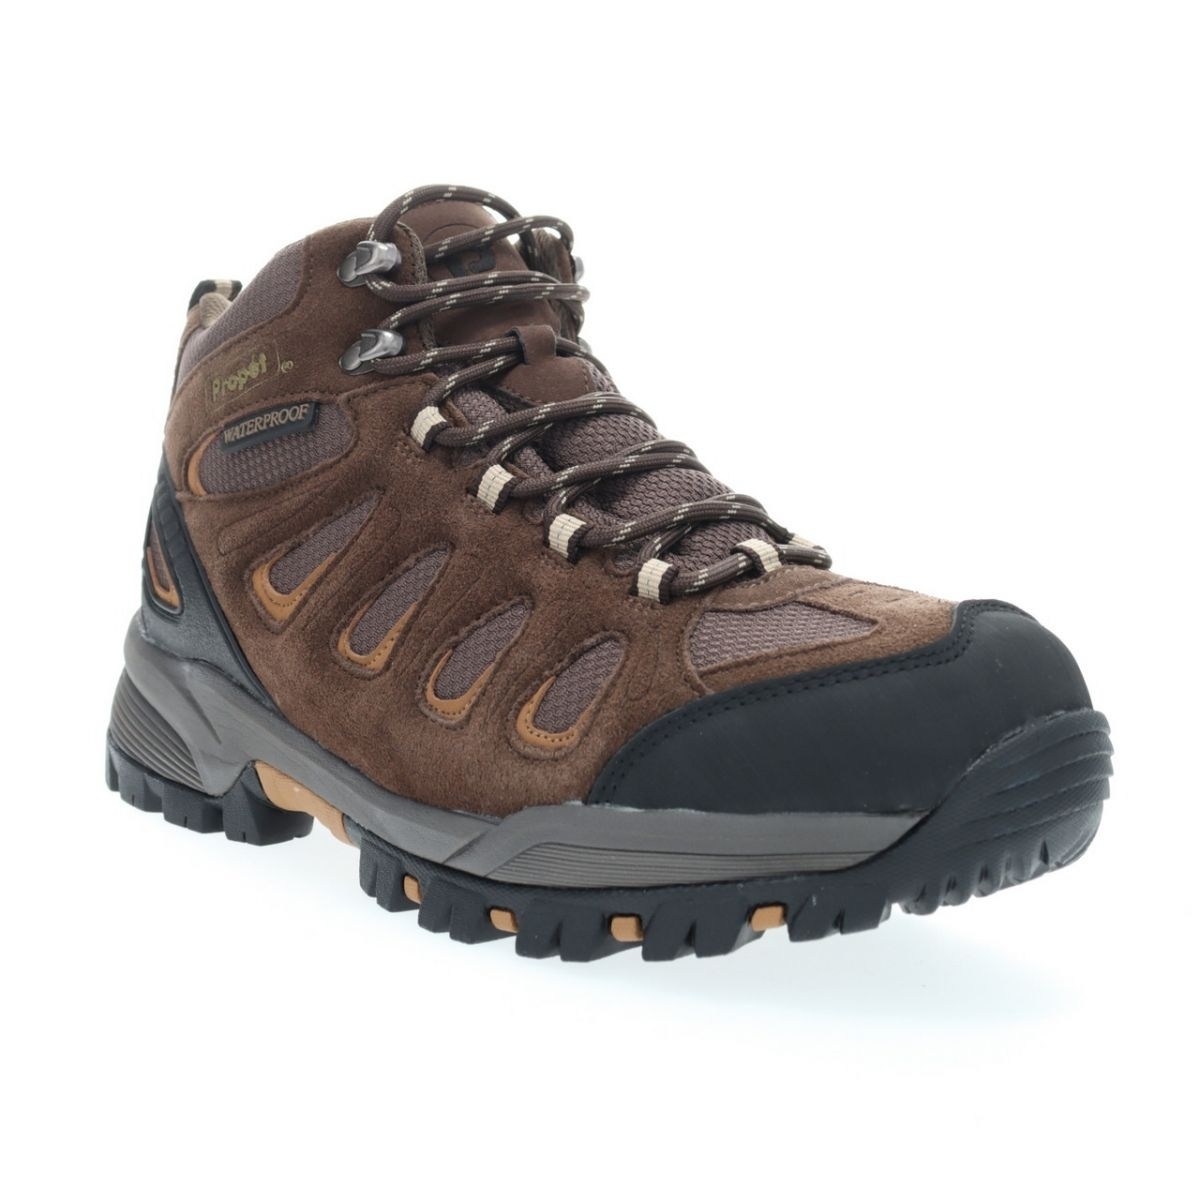 Propet Men's Ridge Walker Hiking Boot Brown - M3599BR 8 XX US Men BROWN - BROWN, 11.5 Wide